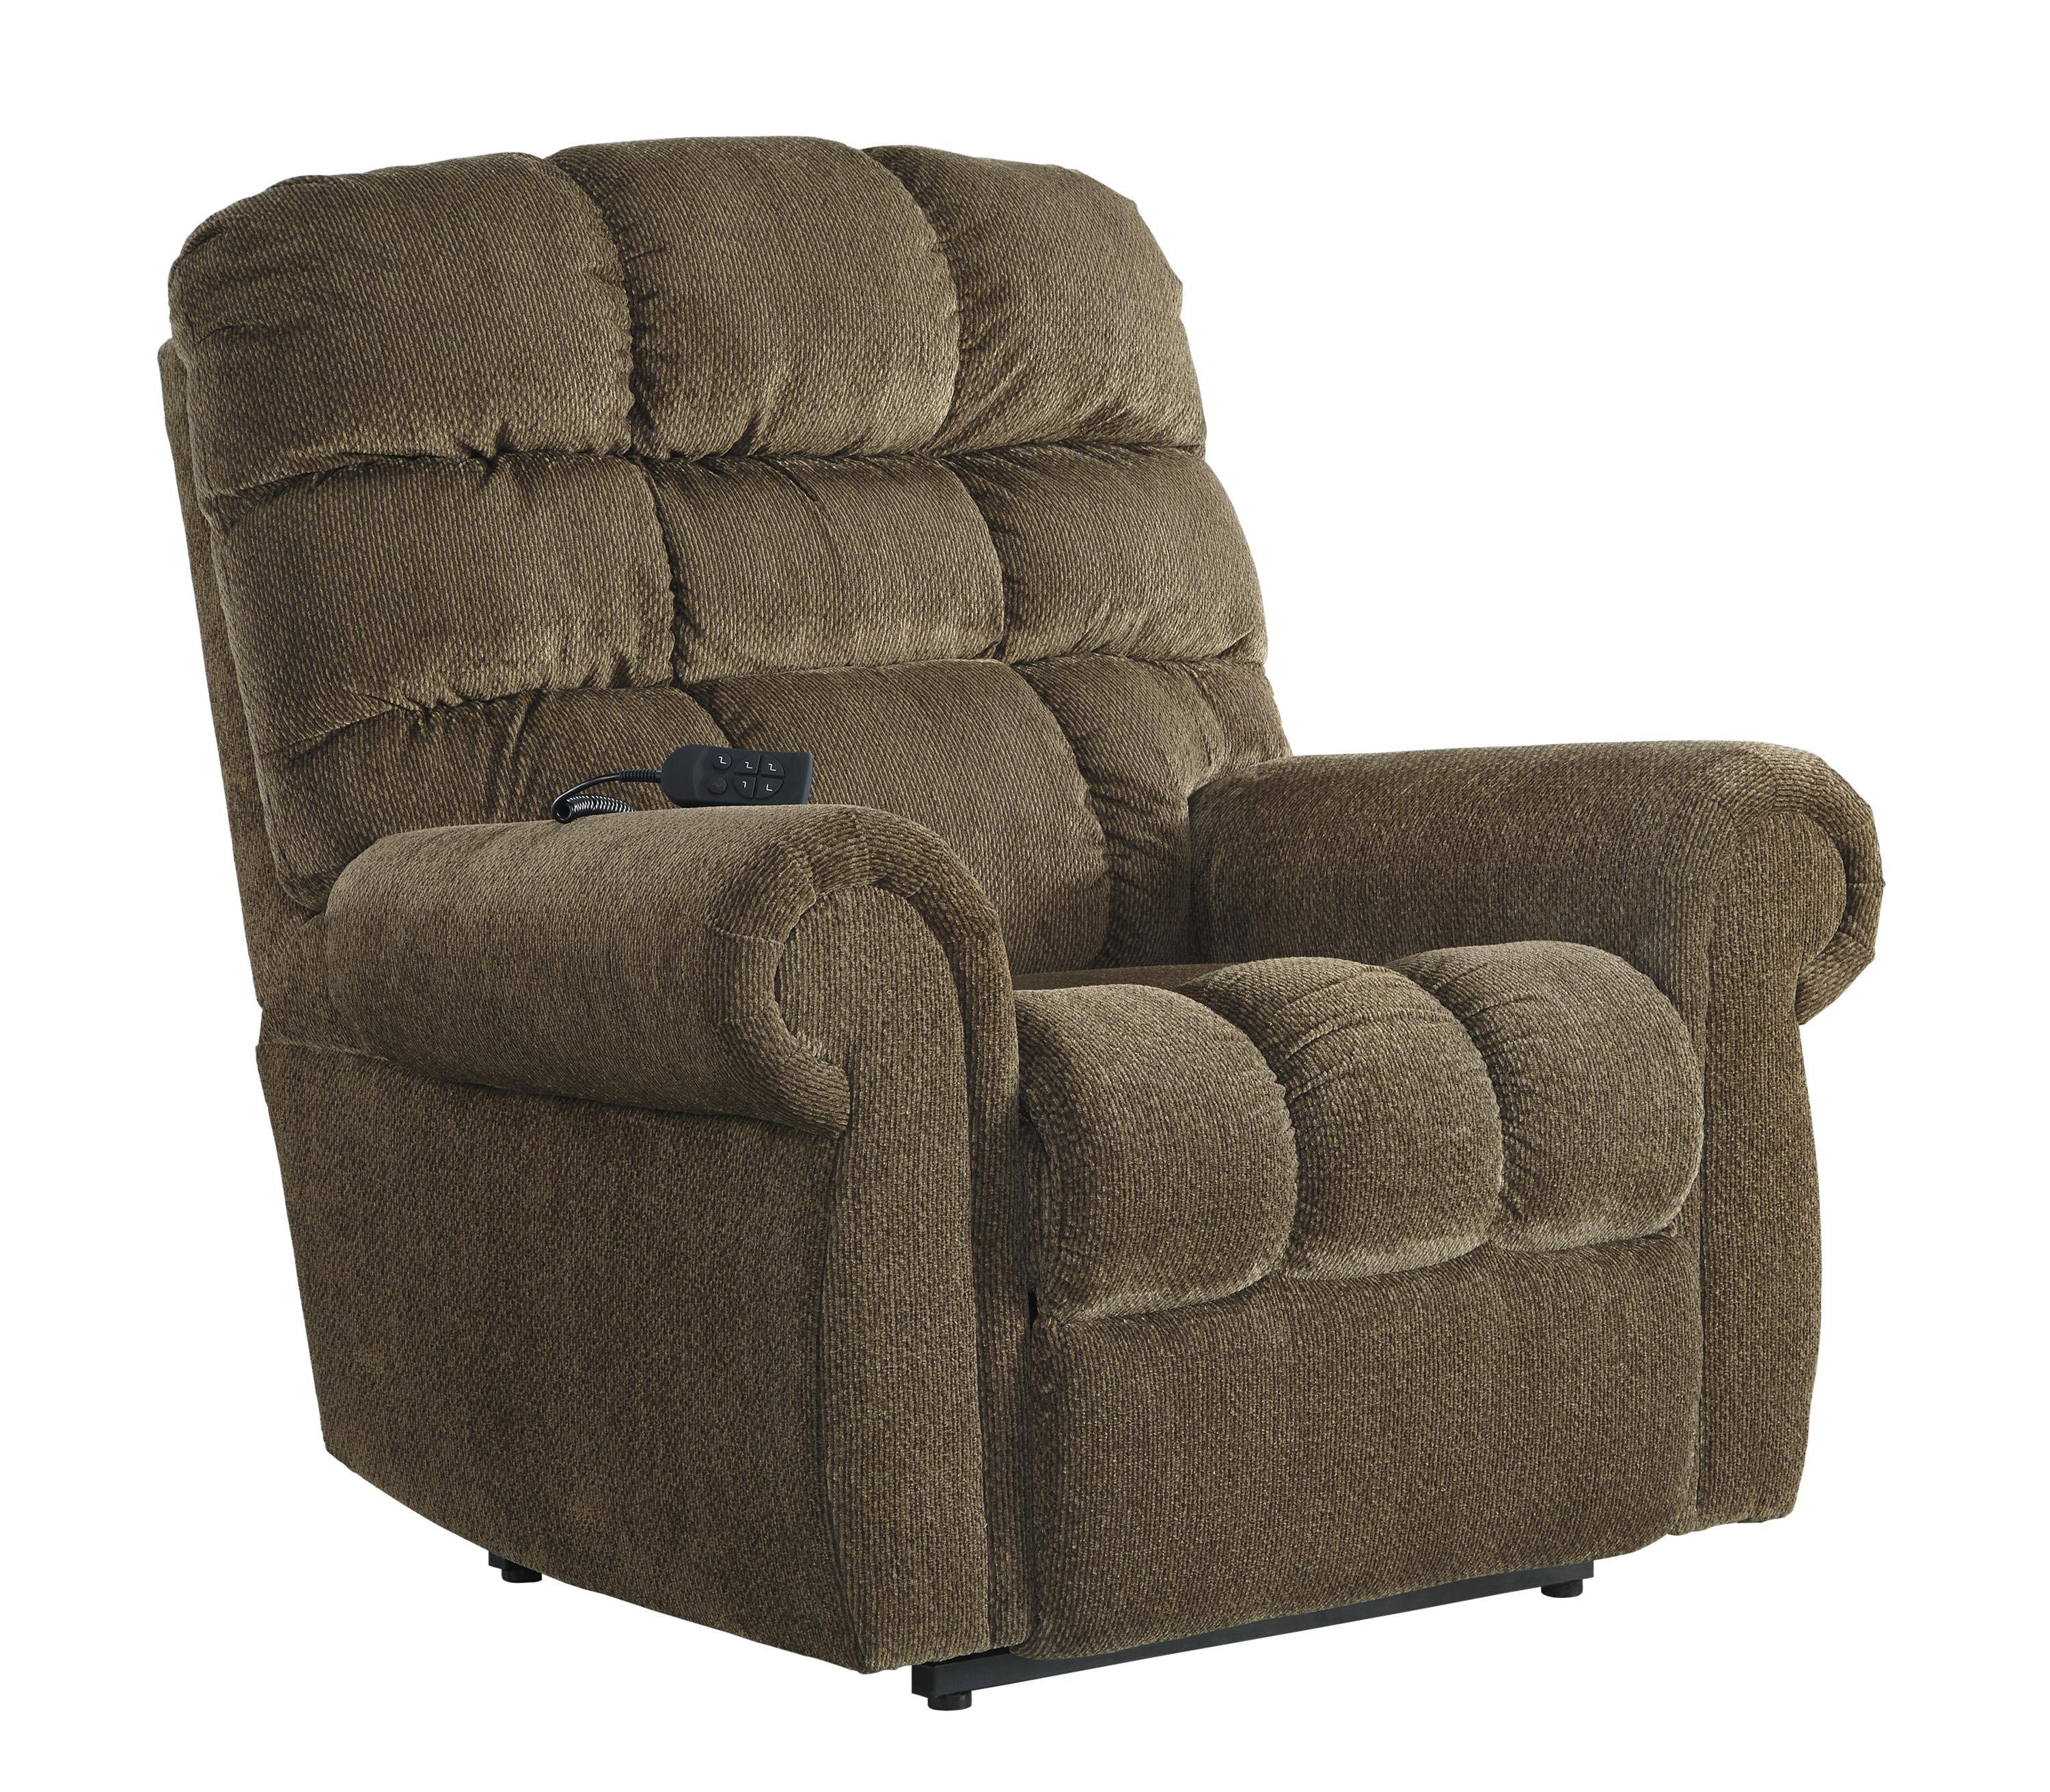 

    
Ashley Furniture Ernestine Reclining Chair Truffle 9760212
